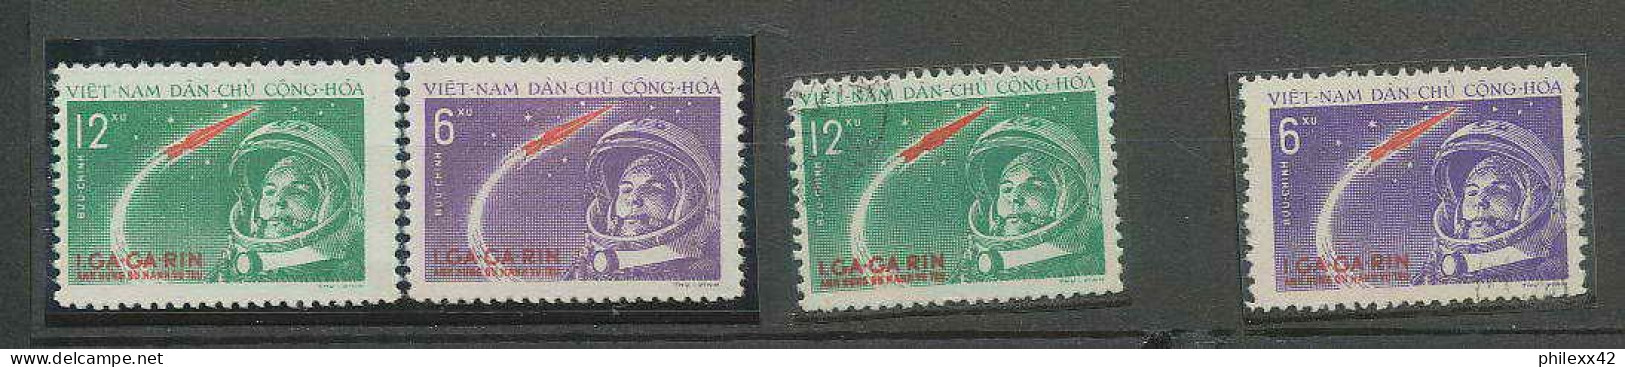 2118/ Espace (space) Neuf ** MNH Viet Nam (Vietnam) - 228/229 Gagarine Gagarin + Used - Asia